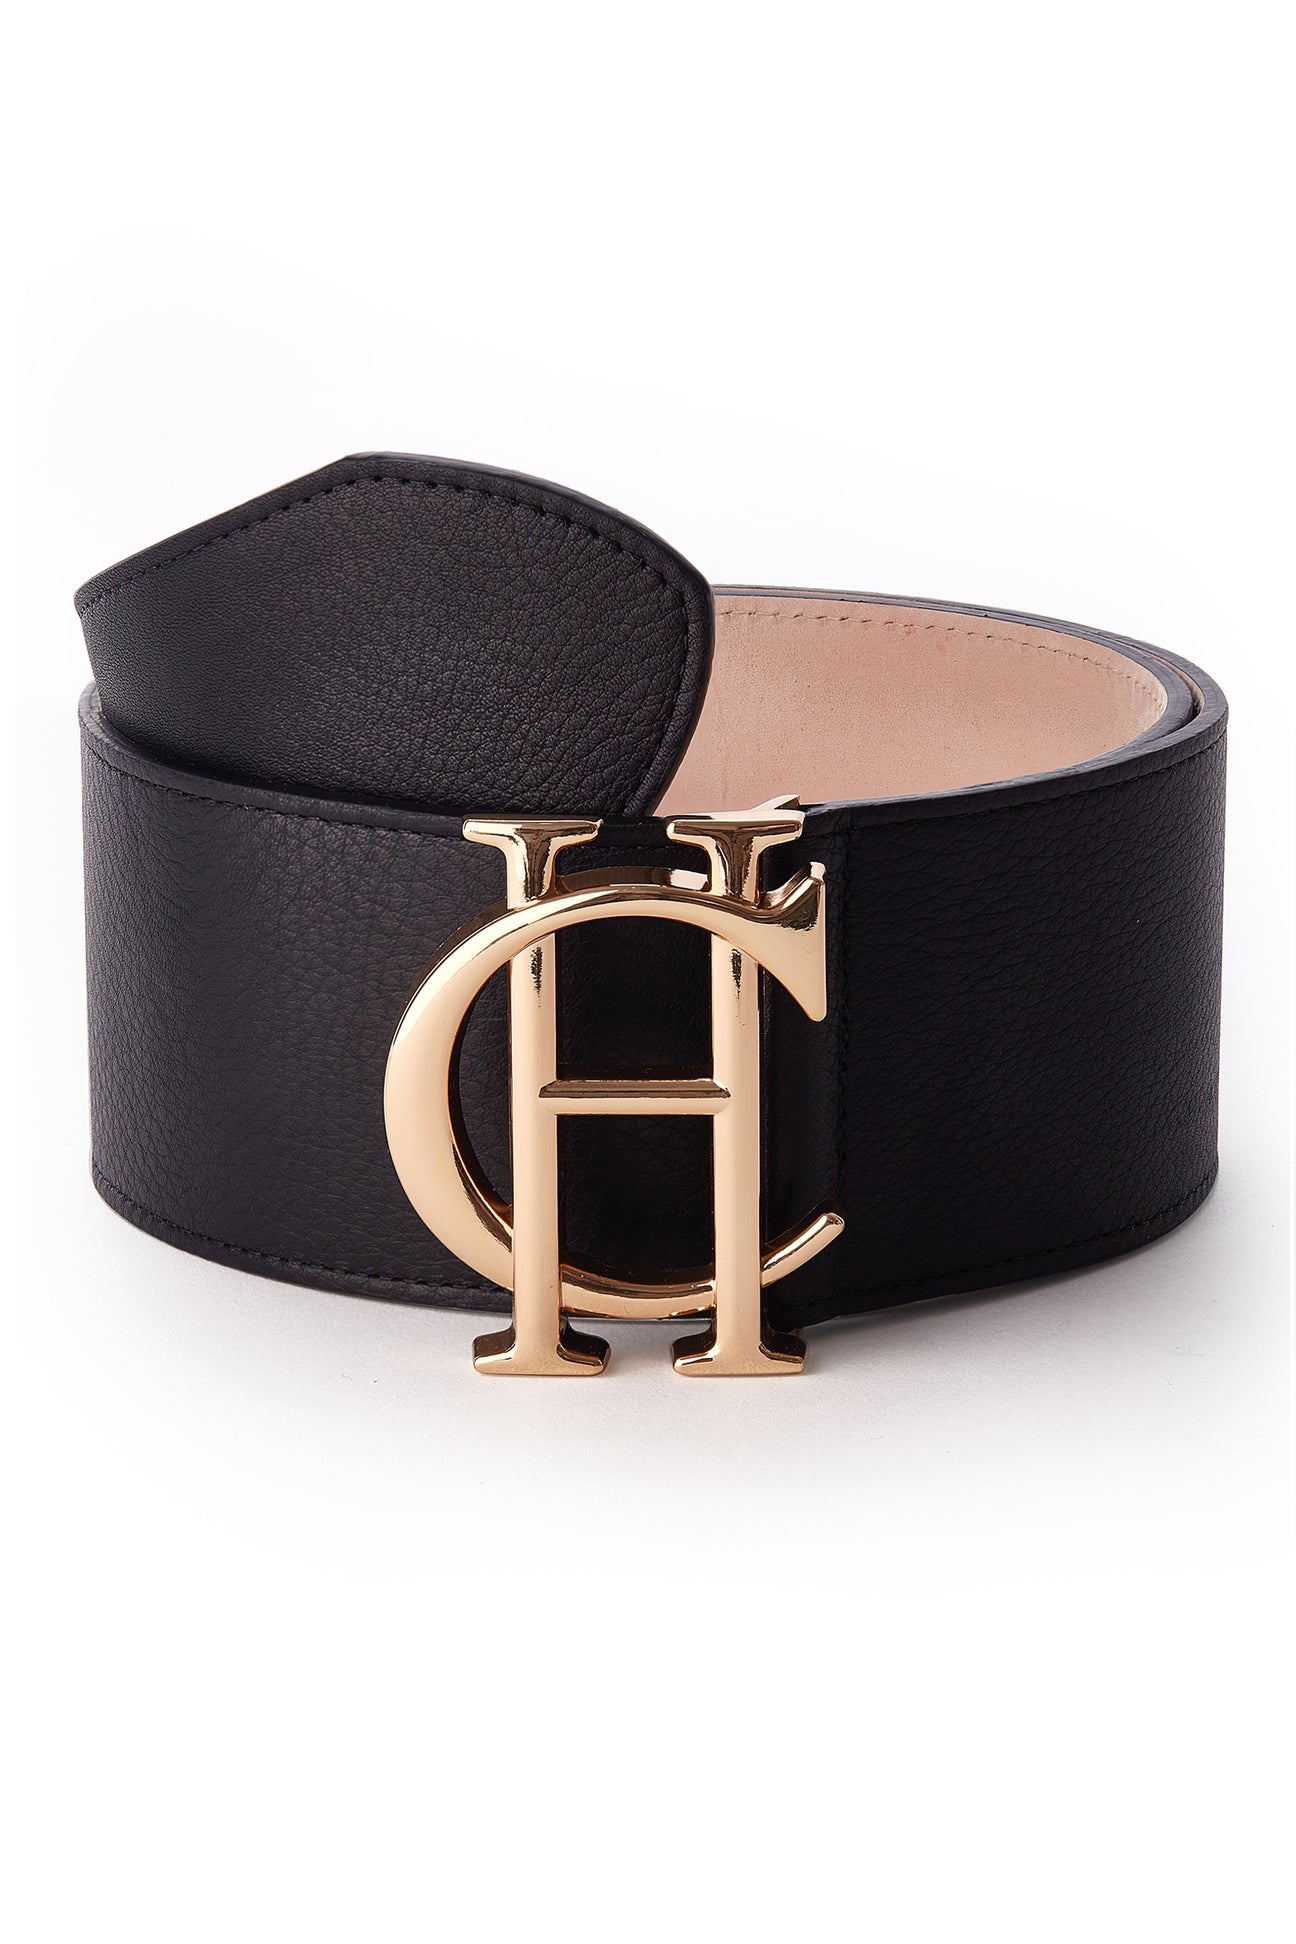 HC Wide Belt (Black) – Holland Cooper